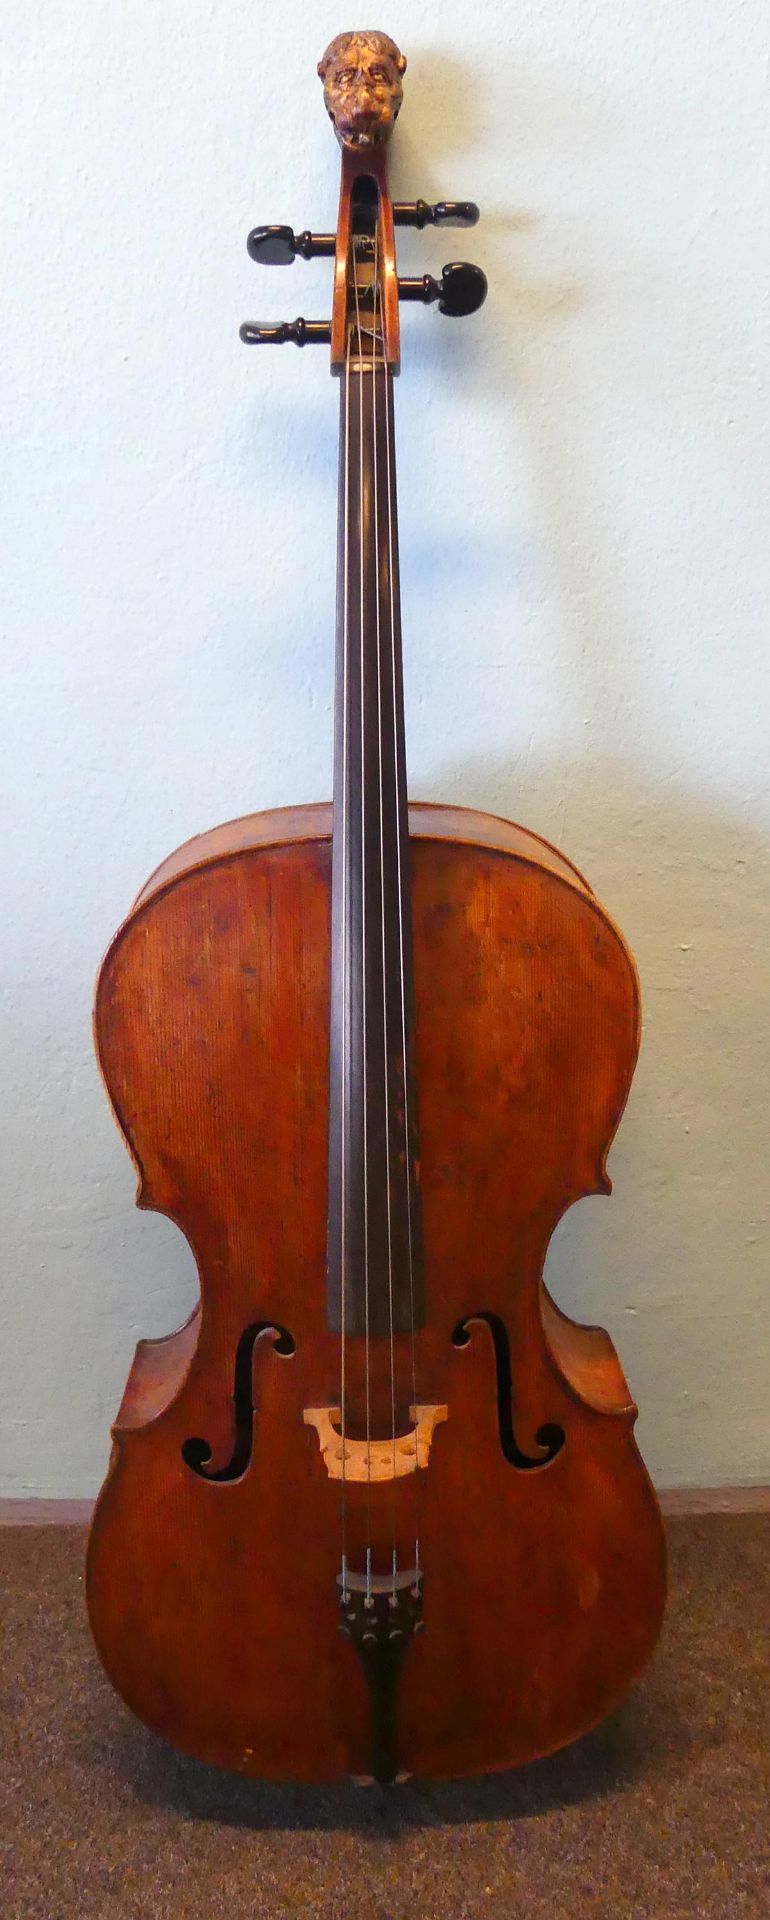 Alletsee, Paulus (1684 Schwangau-1733 München), Cello, Ahorn, 1727,